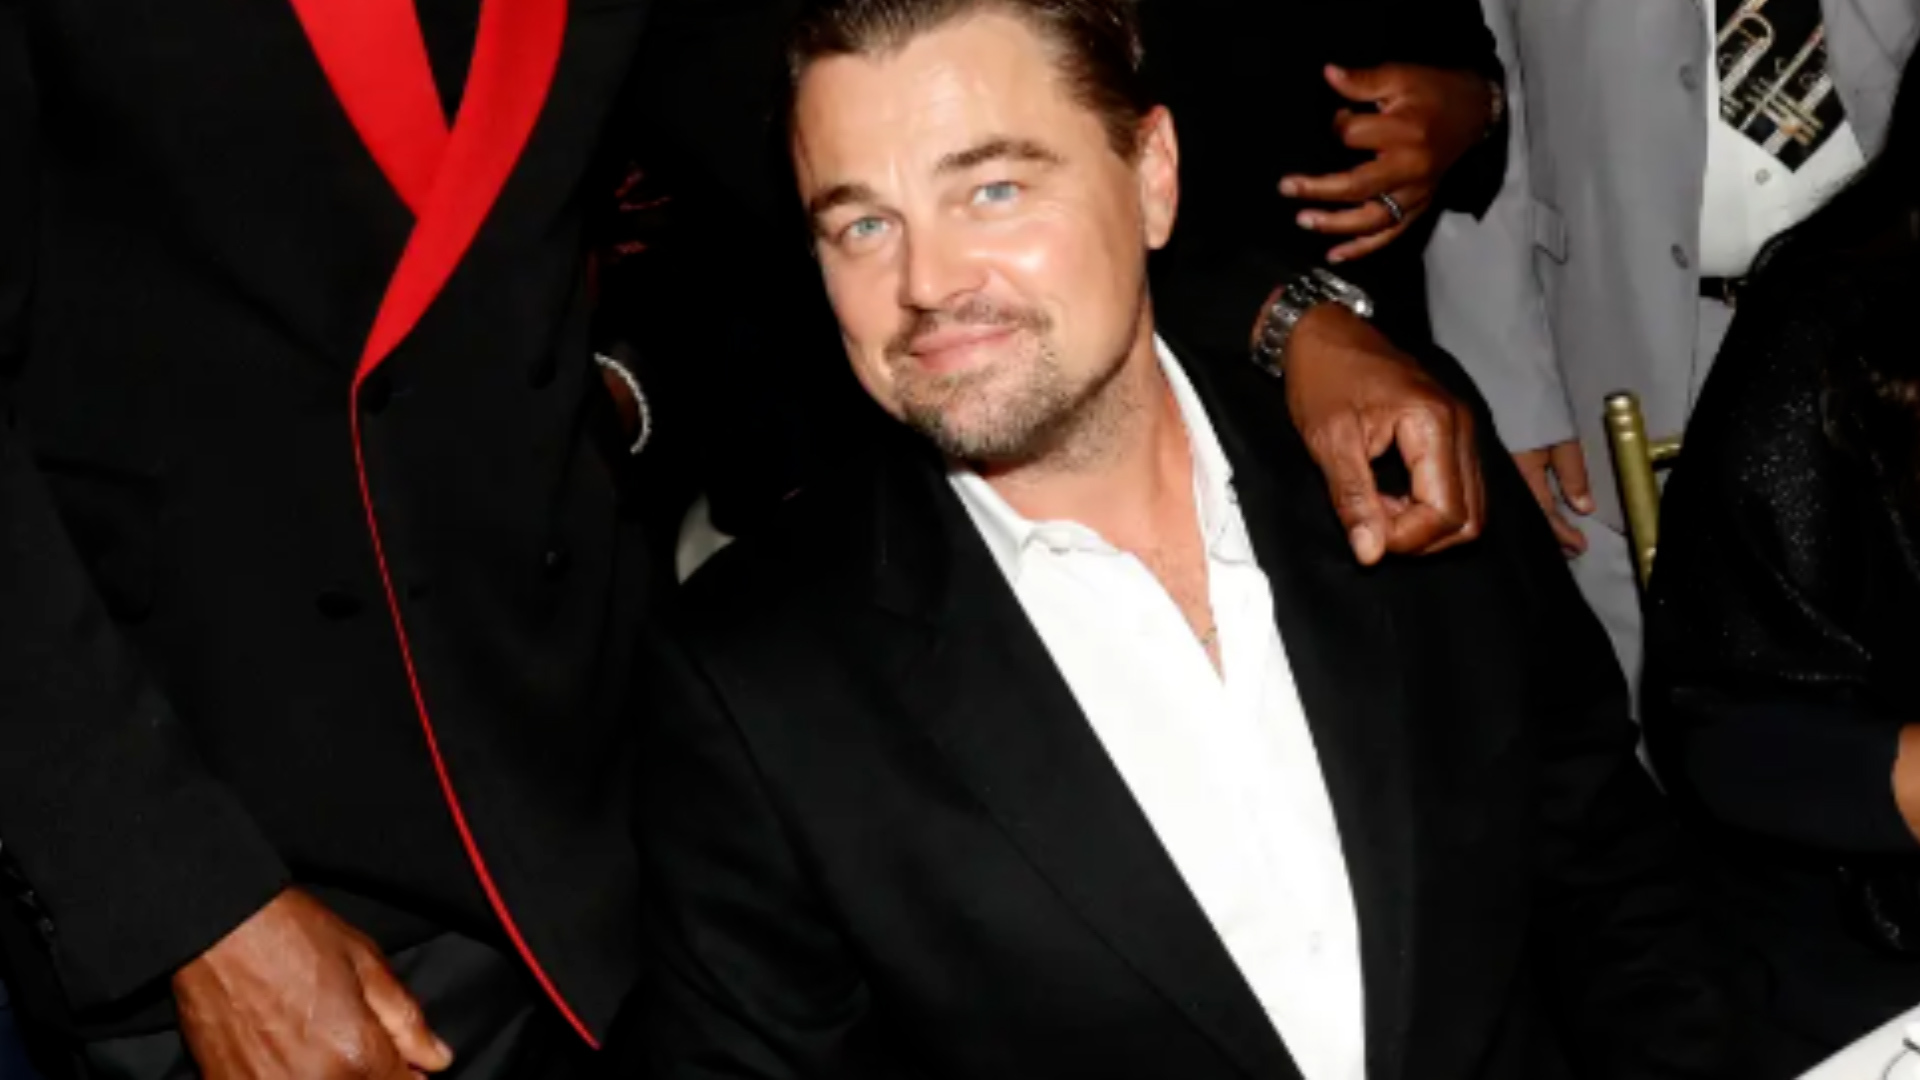 Inside Leonardo DiCaprio's star-studded 48th birthday party